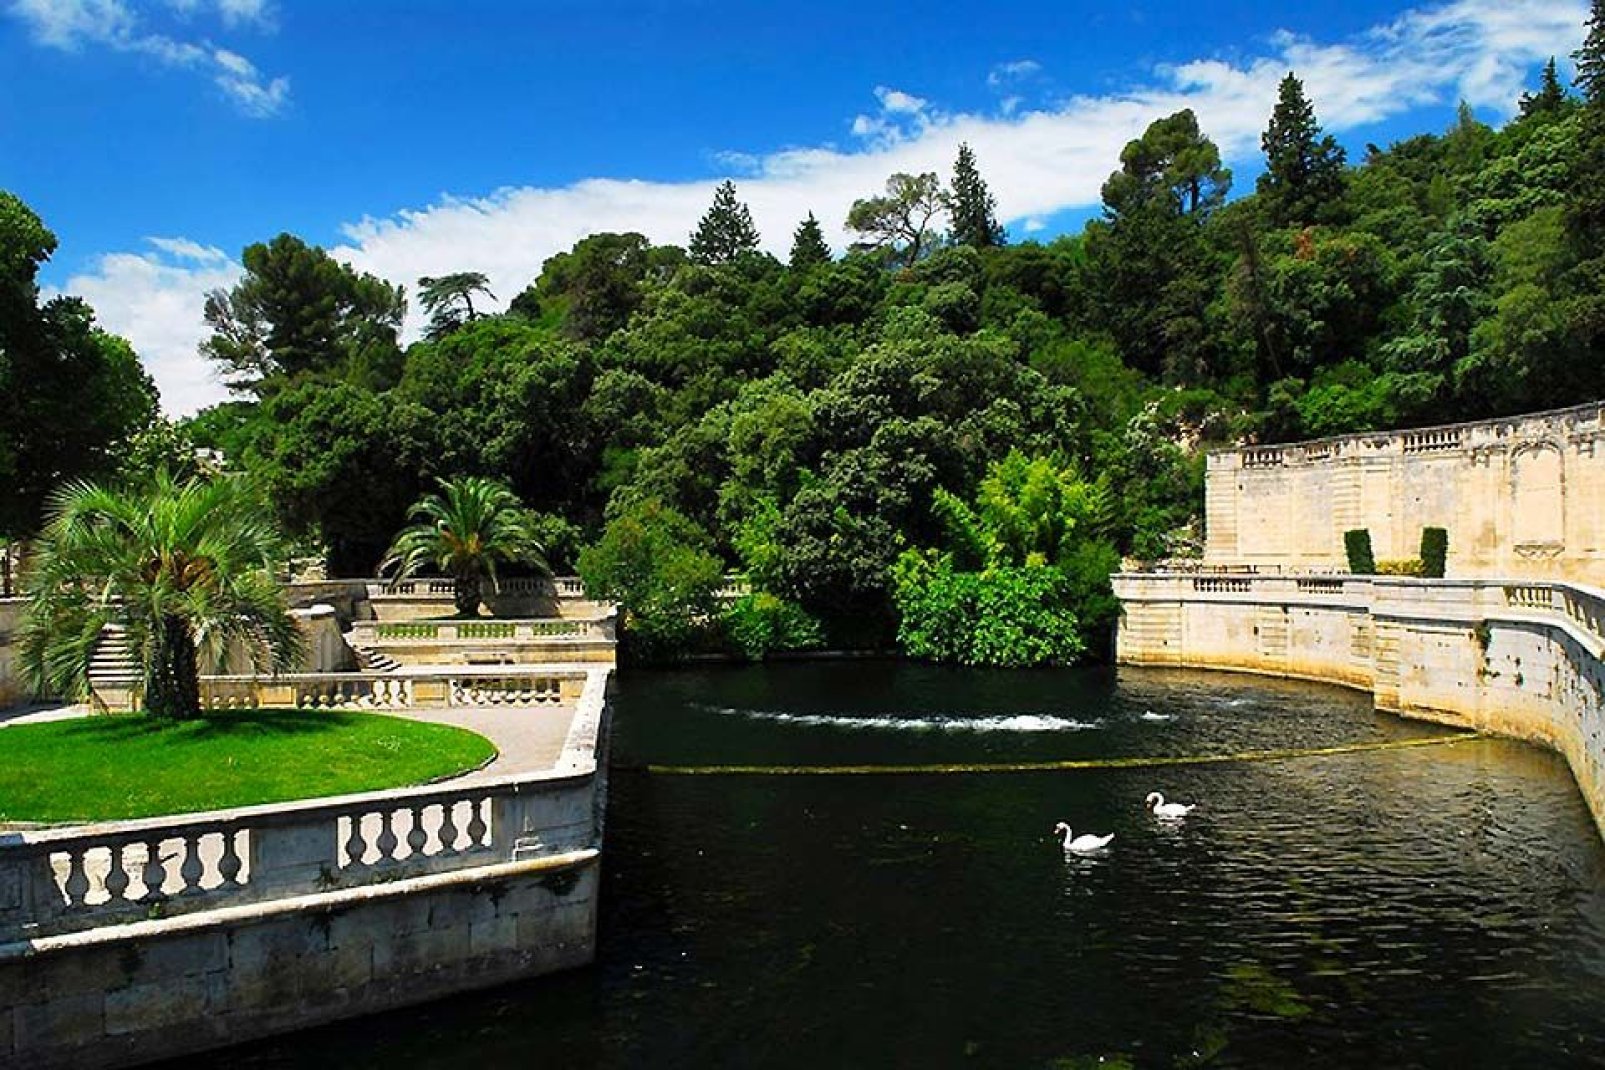 Questo giardino, in stile francese, possiede al centro la sorgente fondatrice della città. Molti amano incontrarvisi durante le belle giornate di sole.